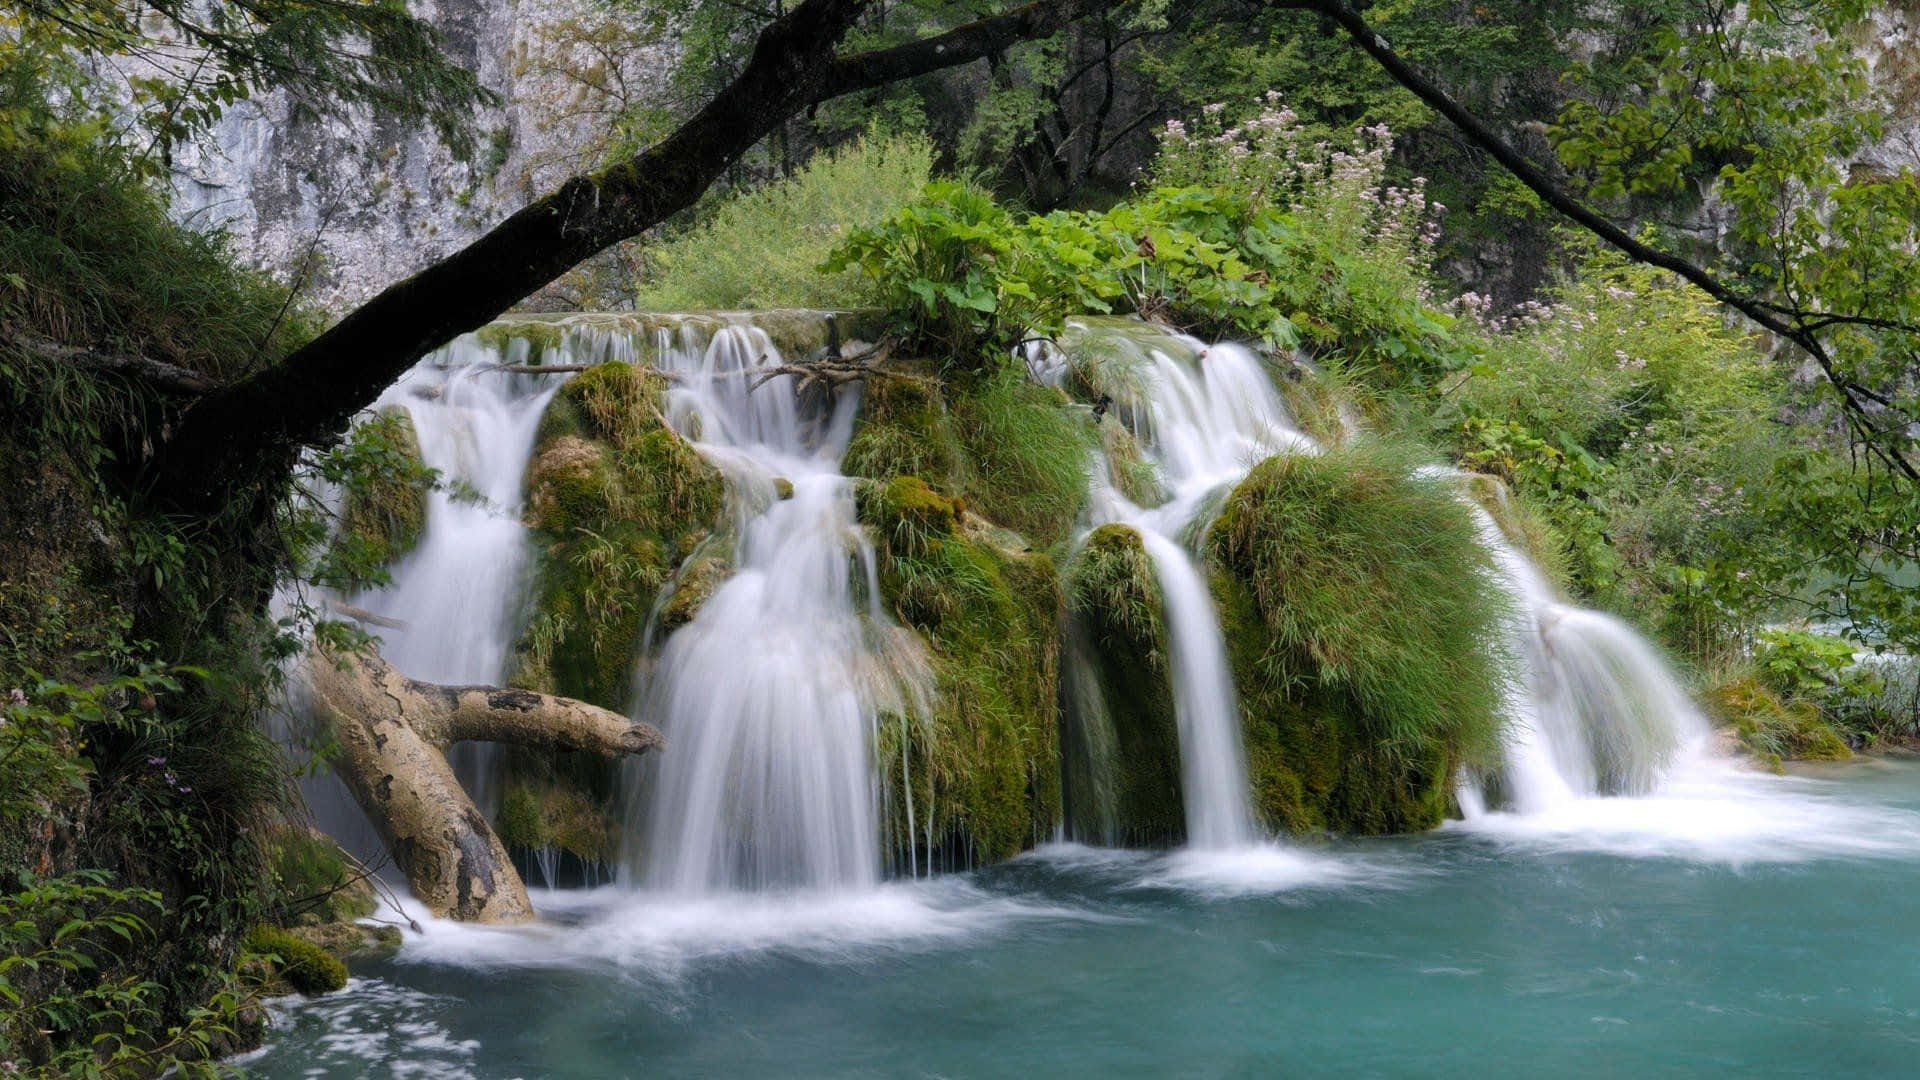 Majestic beauty of nature - Waterfalls